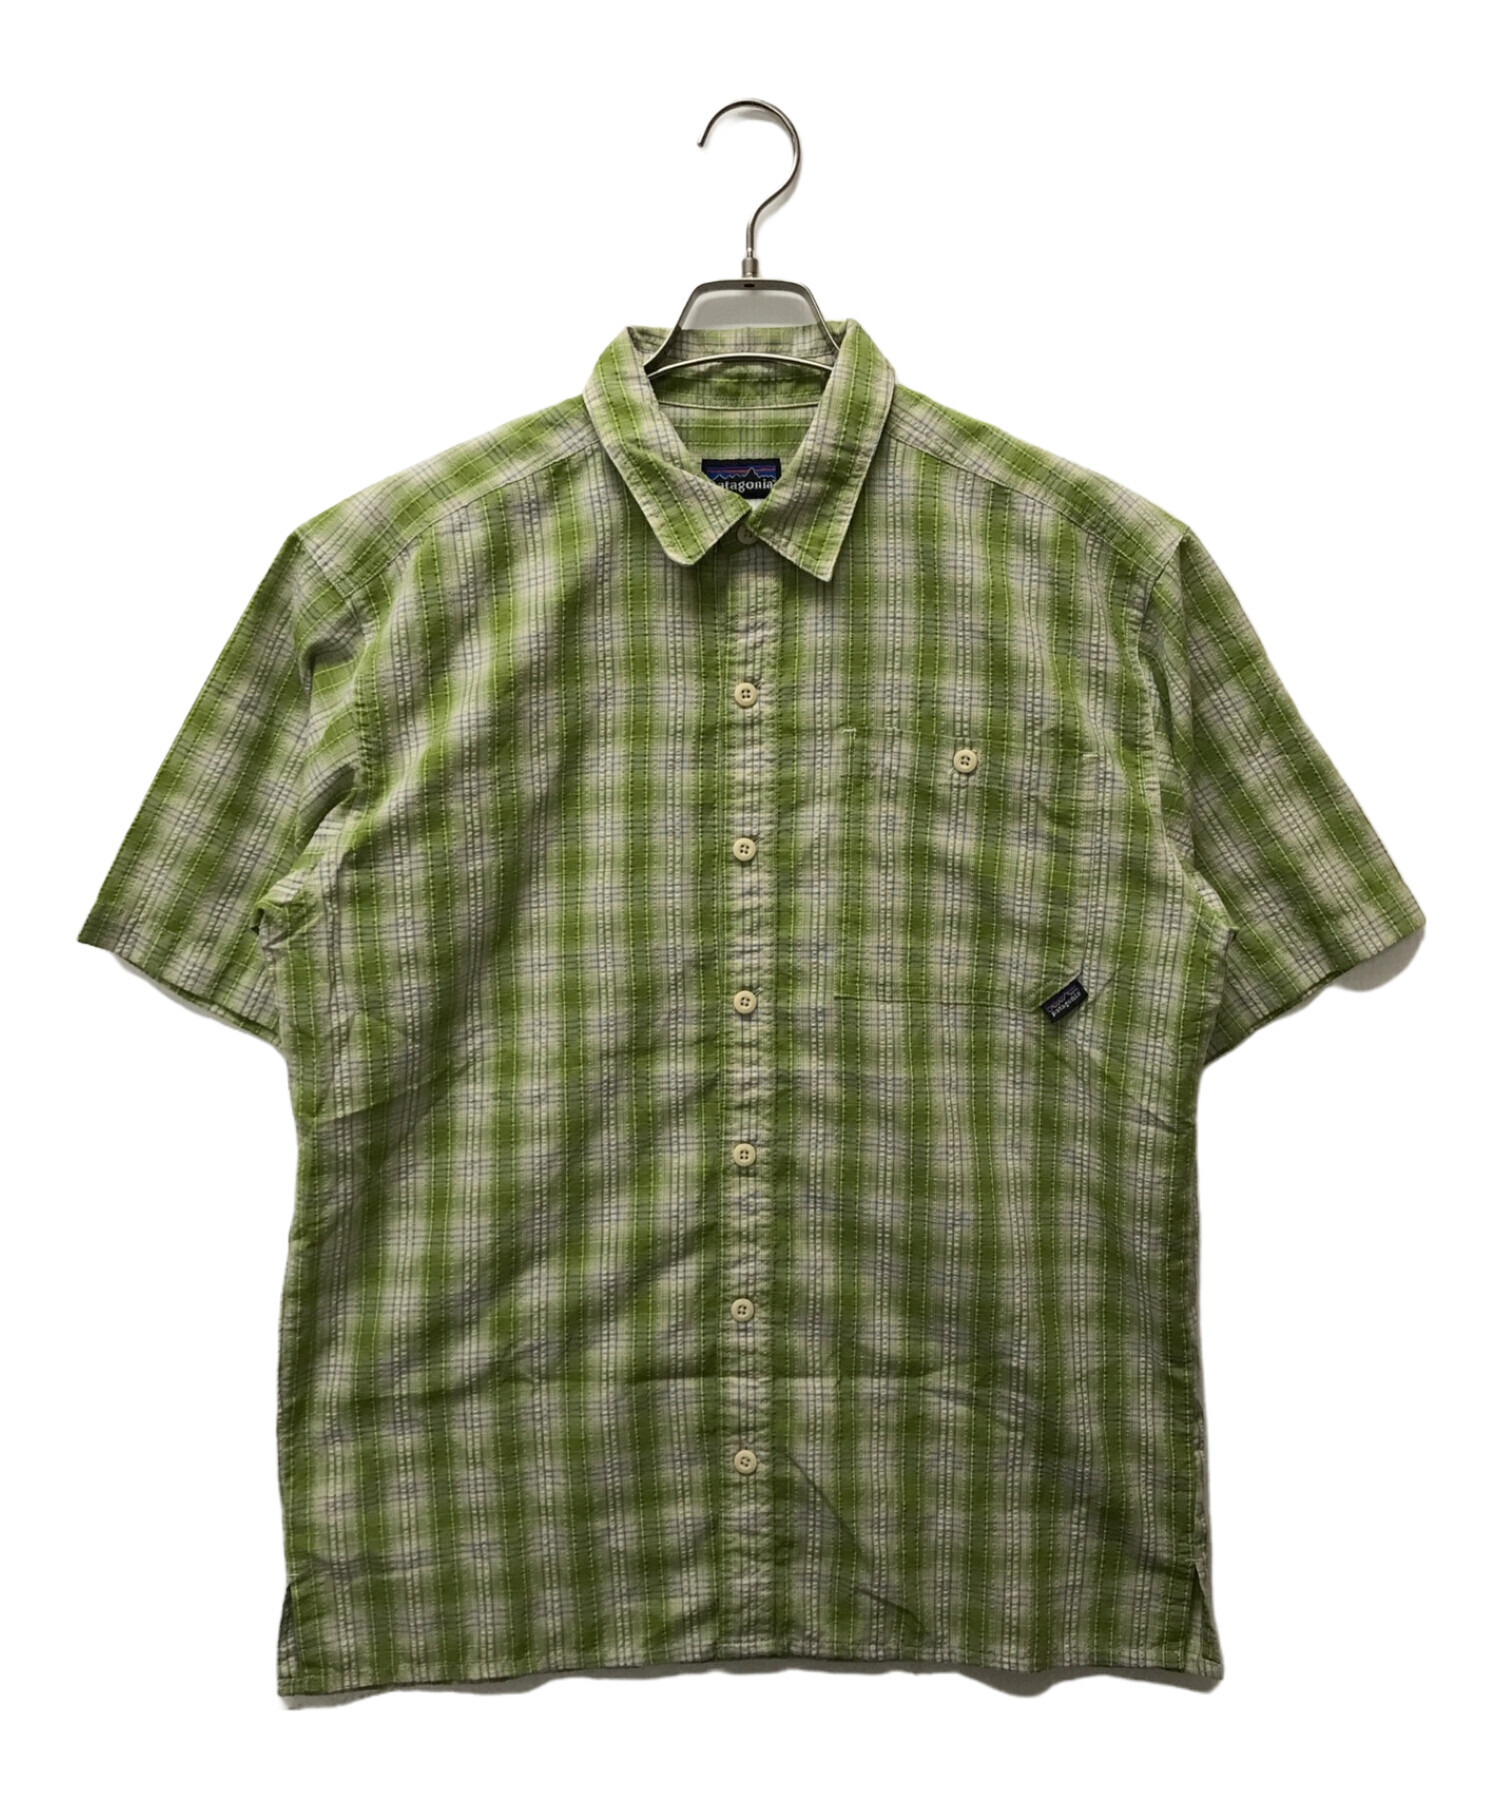 Patagonia (パタゴニア) パッカーウェアシャツ グリーン サイズ:SIZE S